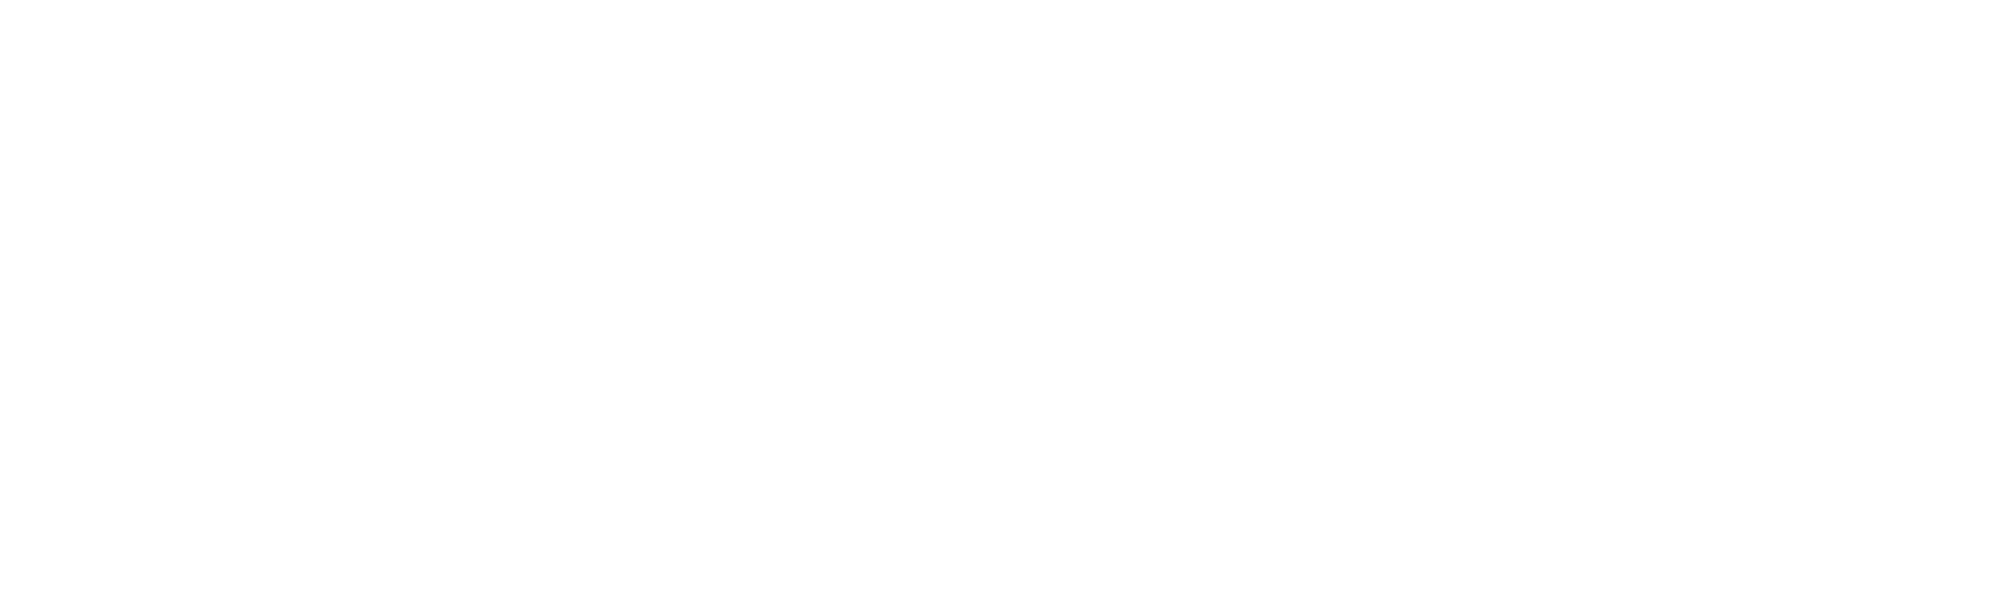 Collectif Microfocus